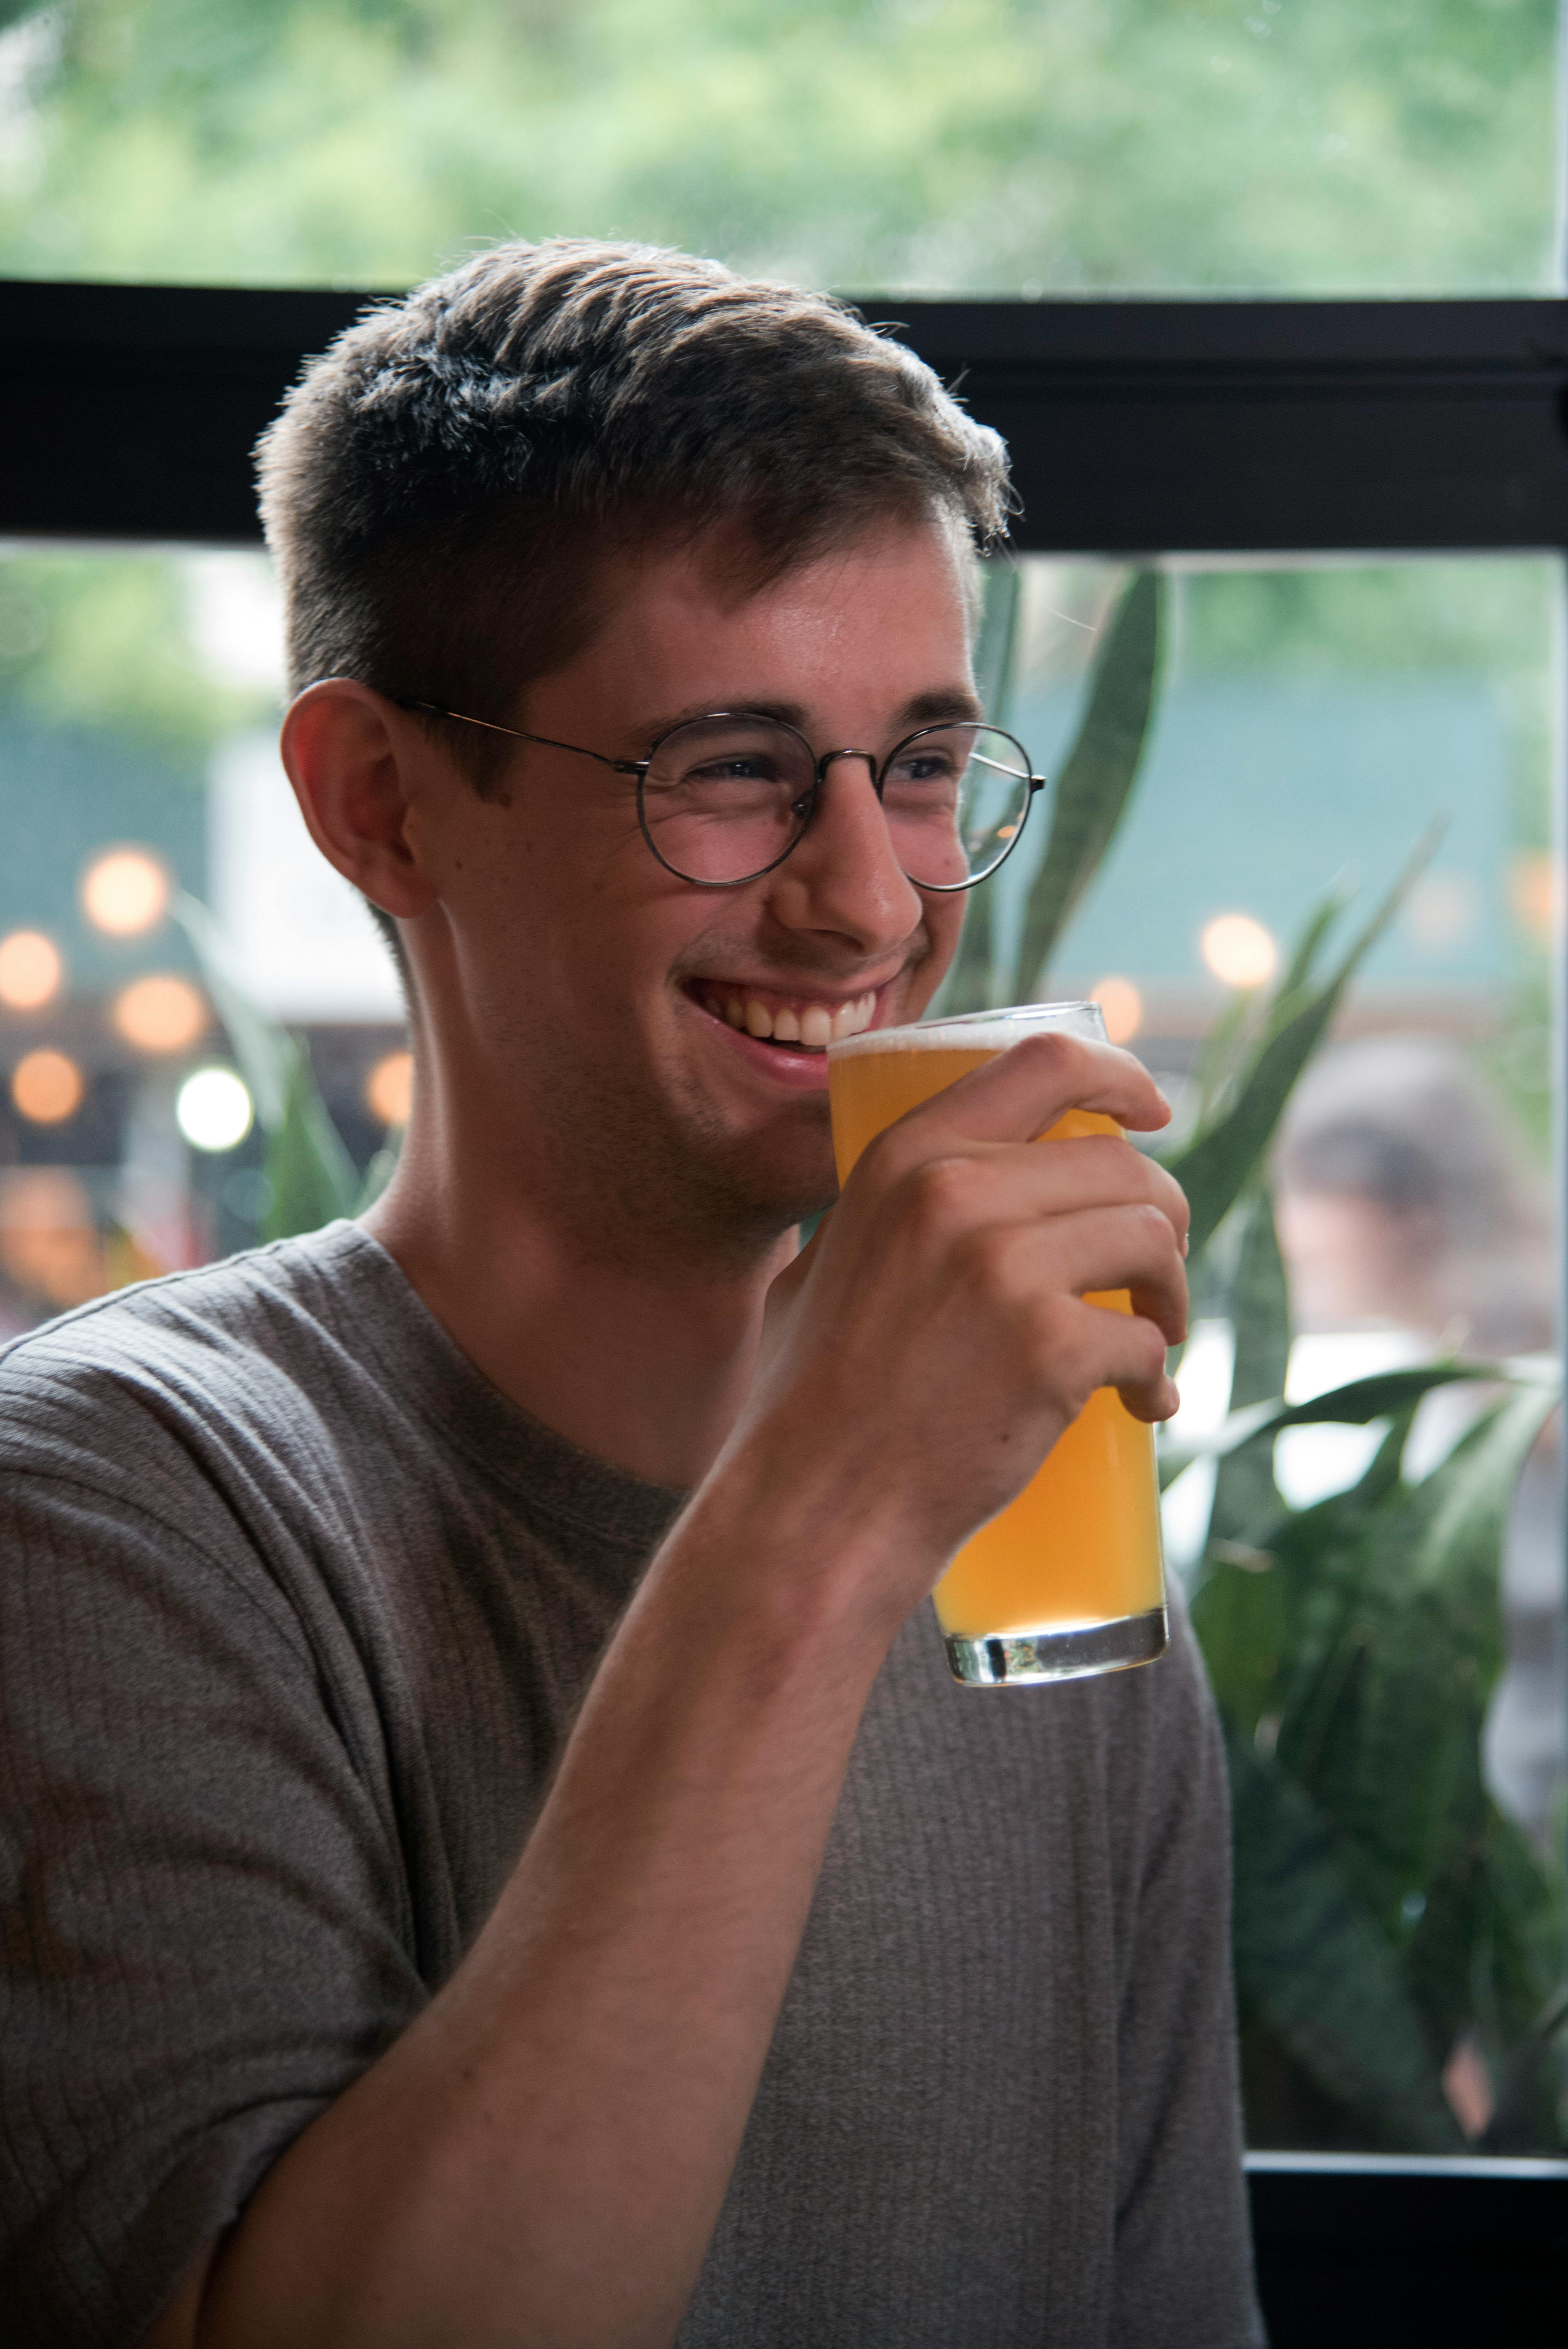 Un hombre tomando una bebida mientras ríe | Fuente: Pexels